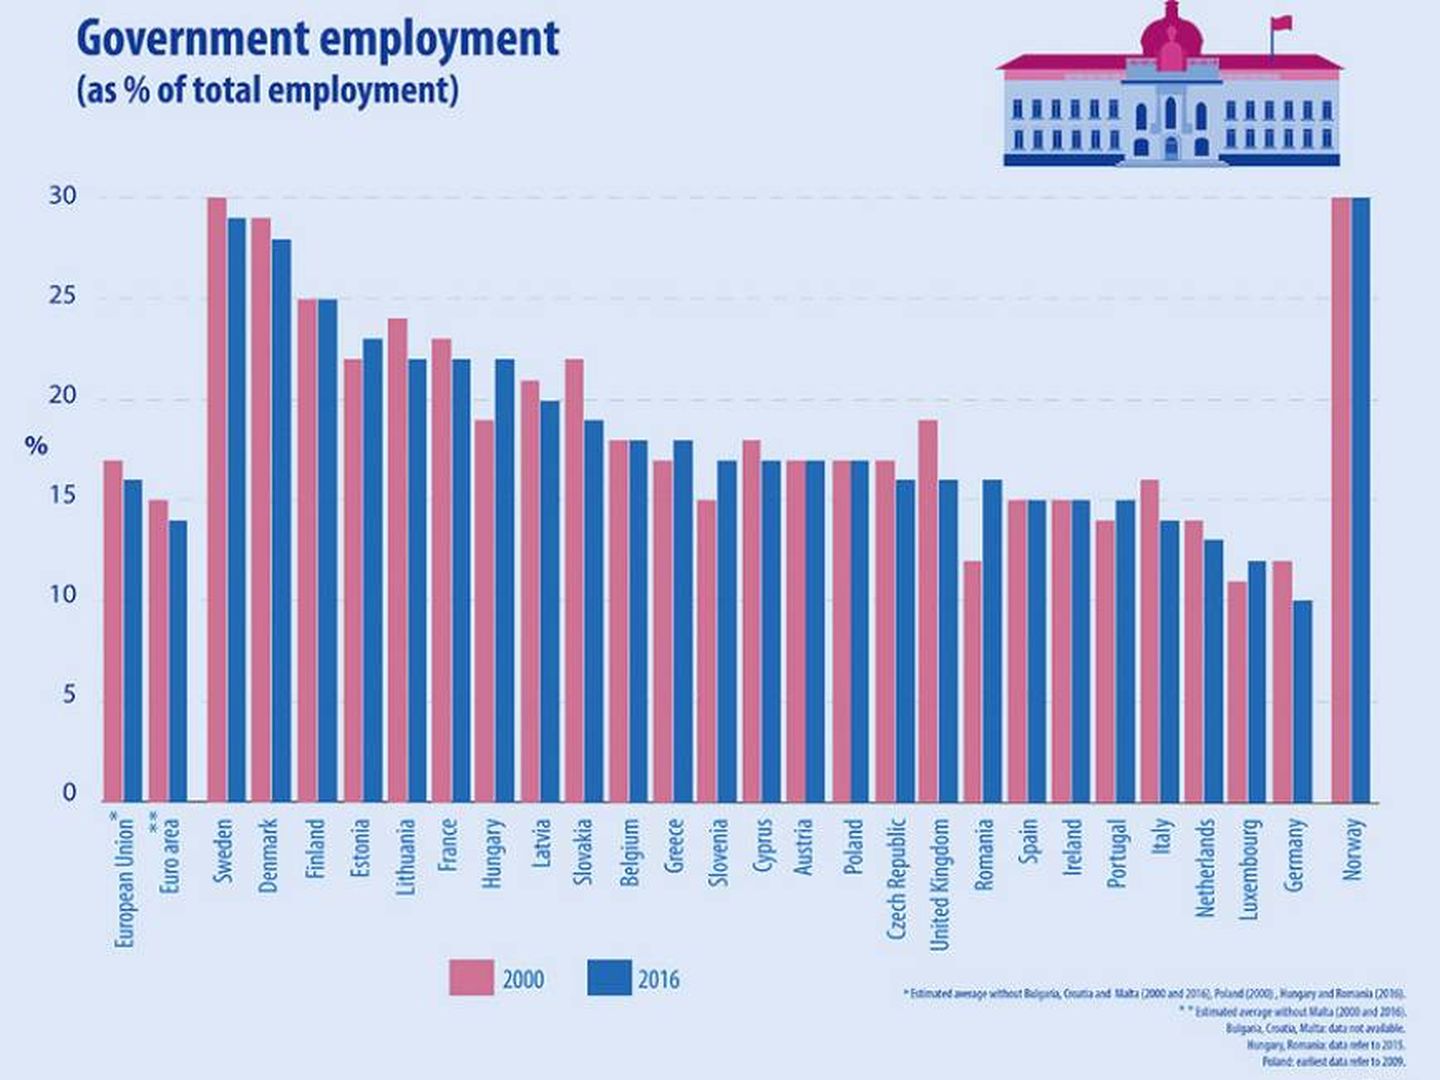 Fig. 1. Evolución del empleo público entre 2000 y 2016 en Europa. (Fuente: Eurostat)